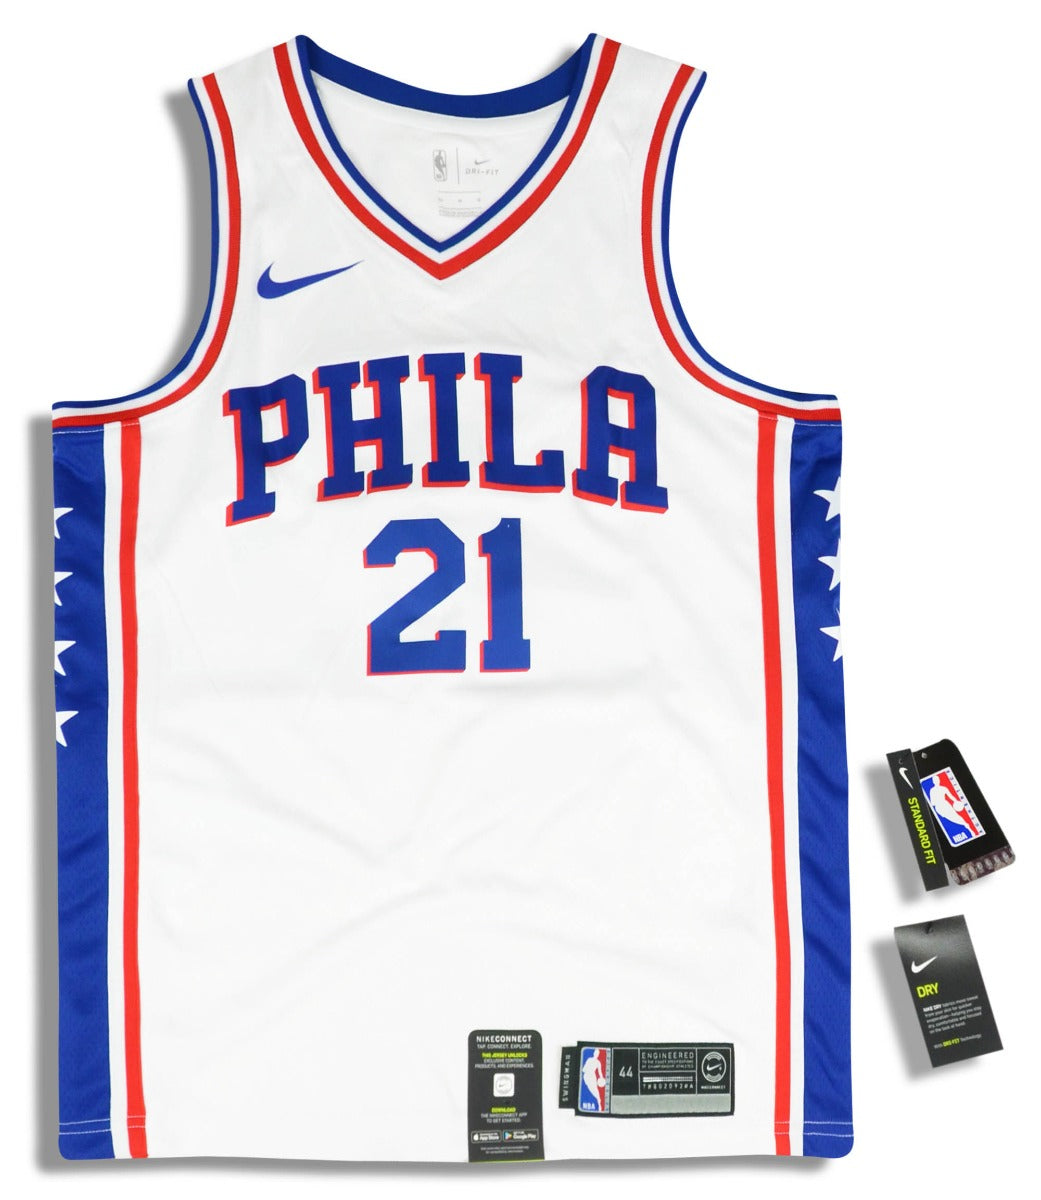 Blue Nike NBA Philadelphia 76ers Swingman Embiid #21 Jersey